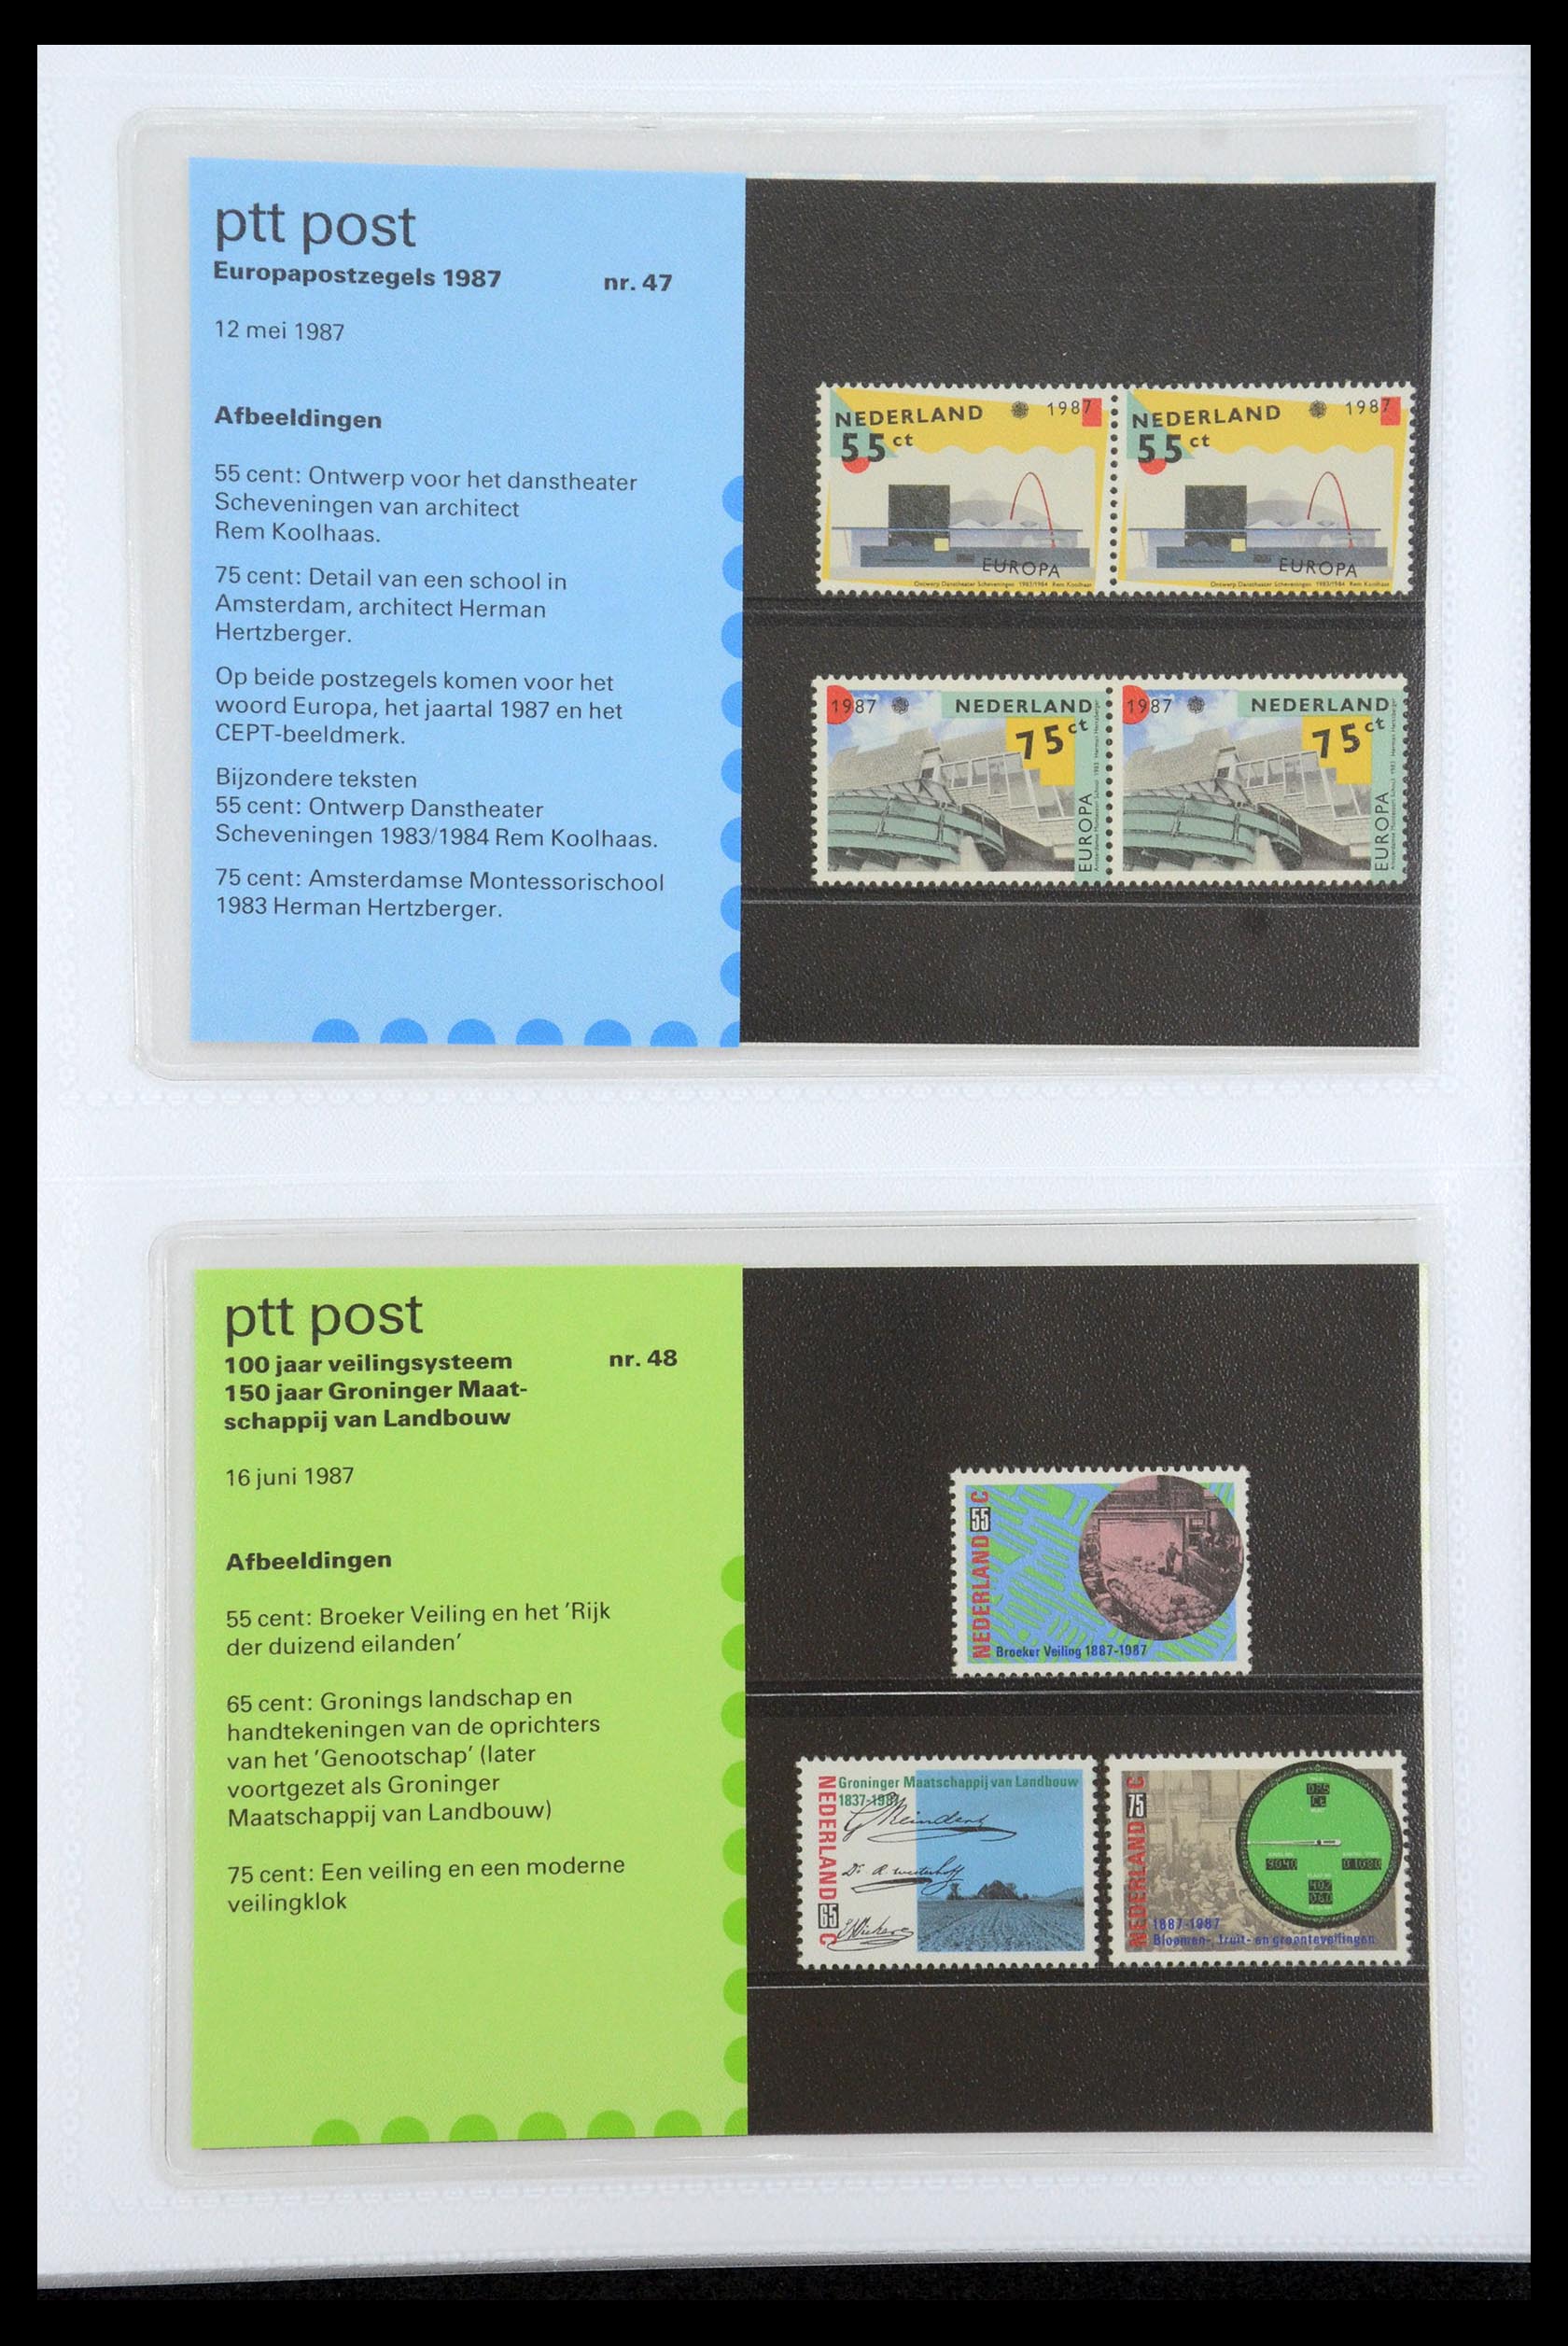 35947 024 - Stamp Collection 35947 Netherlands PTT presentation packs 1982-2019!